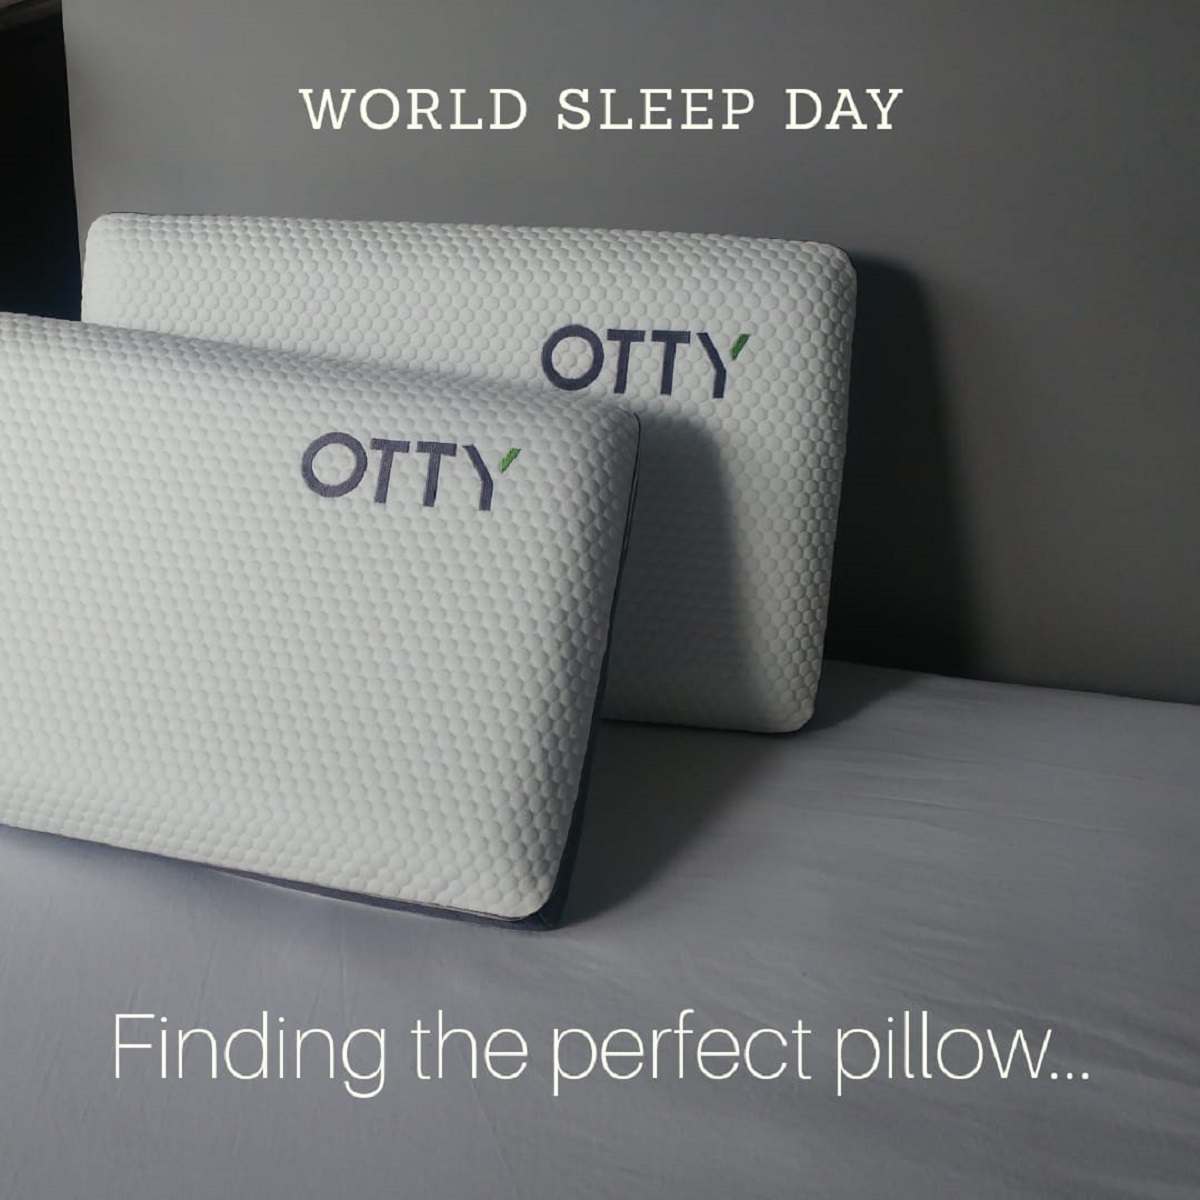 otty pillow offer